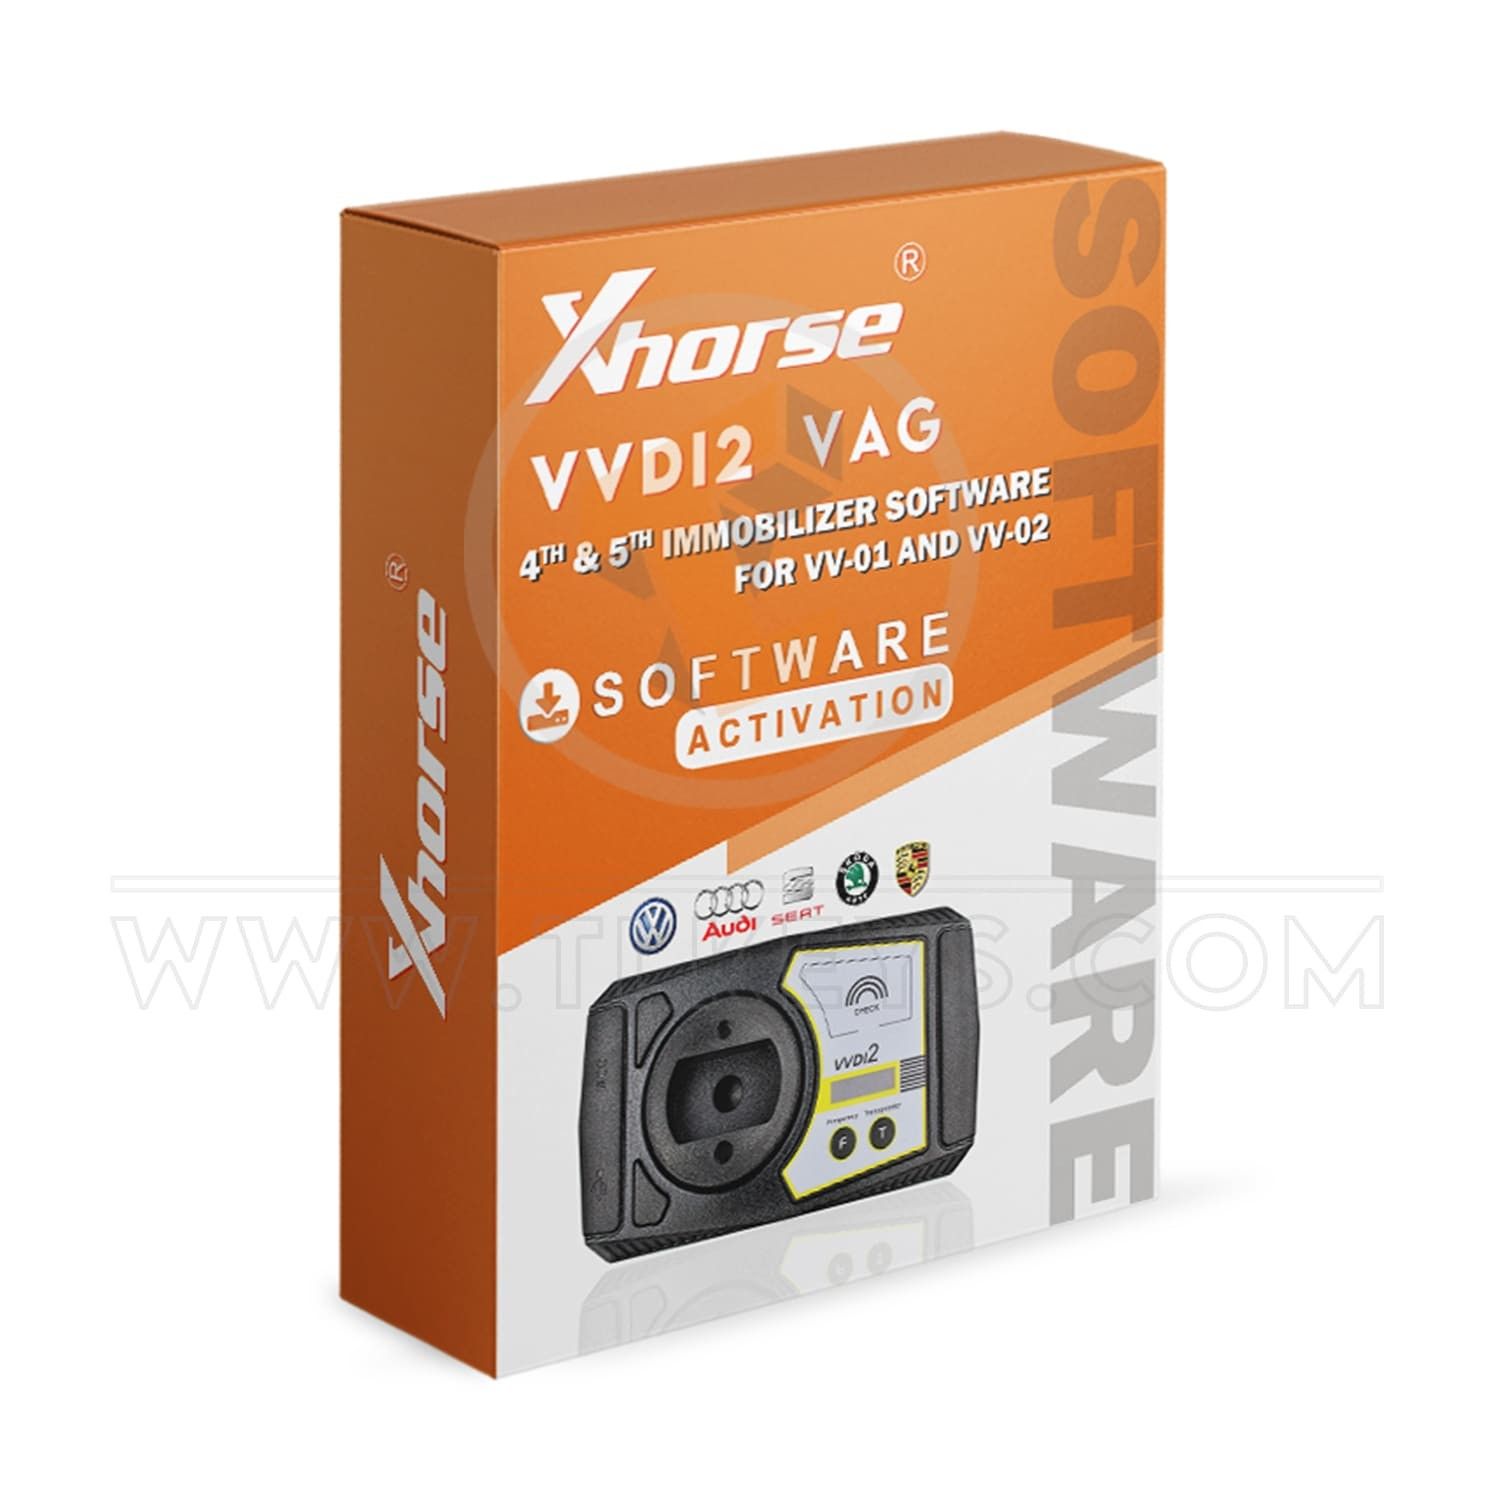 VVDI2 VAG 4th & 5th Immobilizer Software (VV-01 And VV-02) software